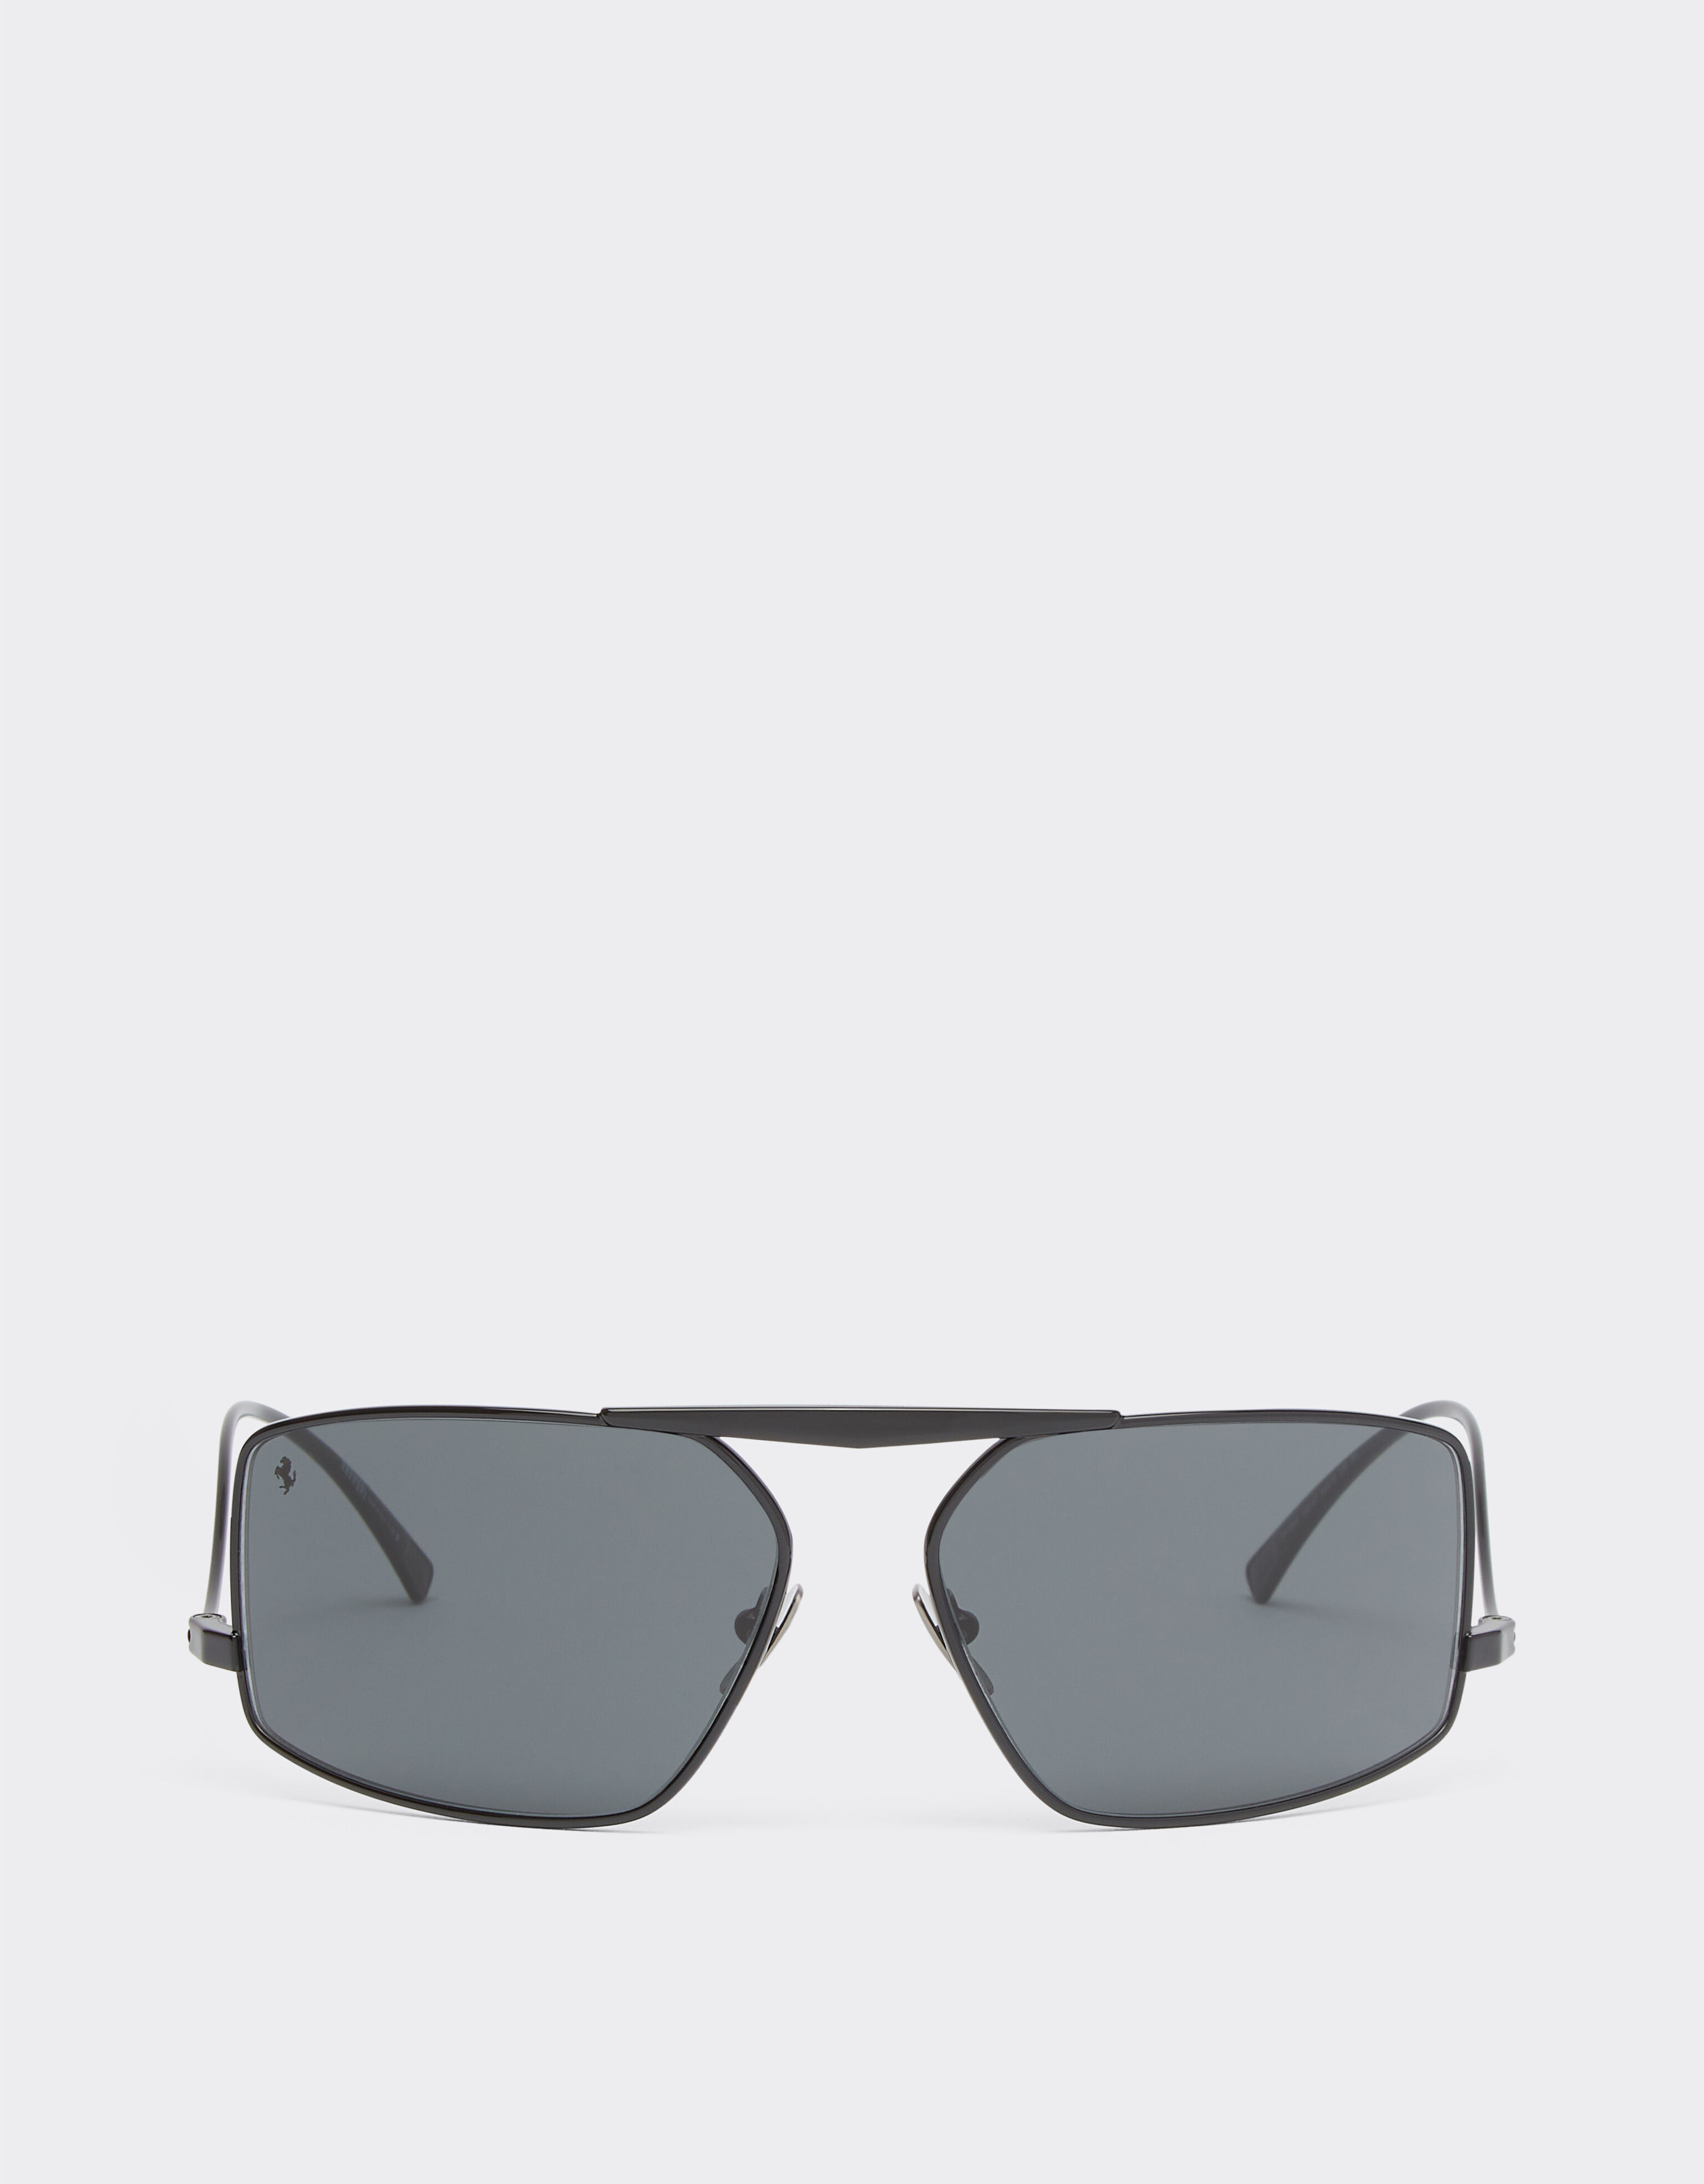 Ferrari Gafas de sol Ferrari de metal negro con lentes grises Negro F1201f